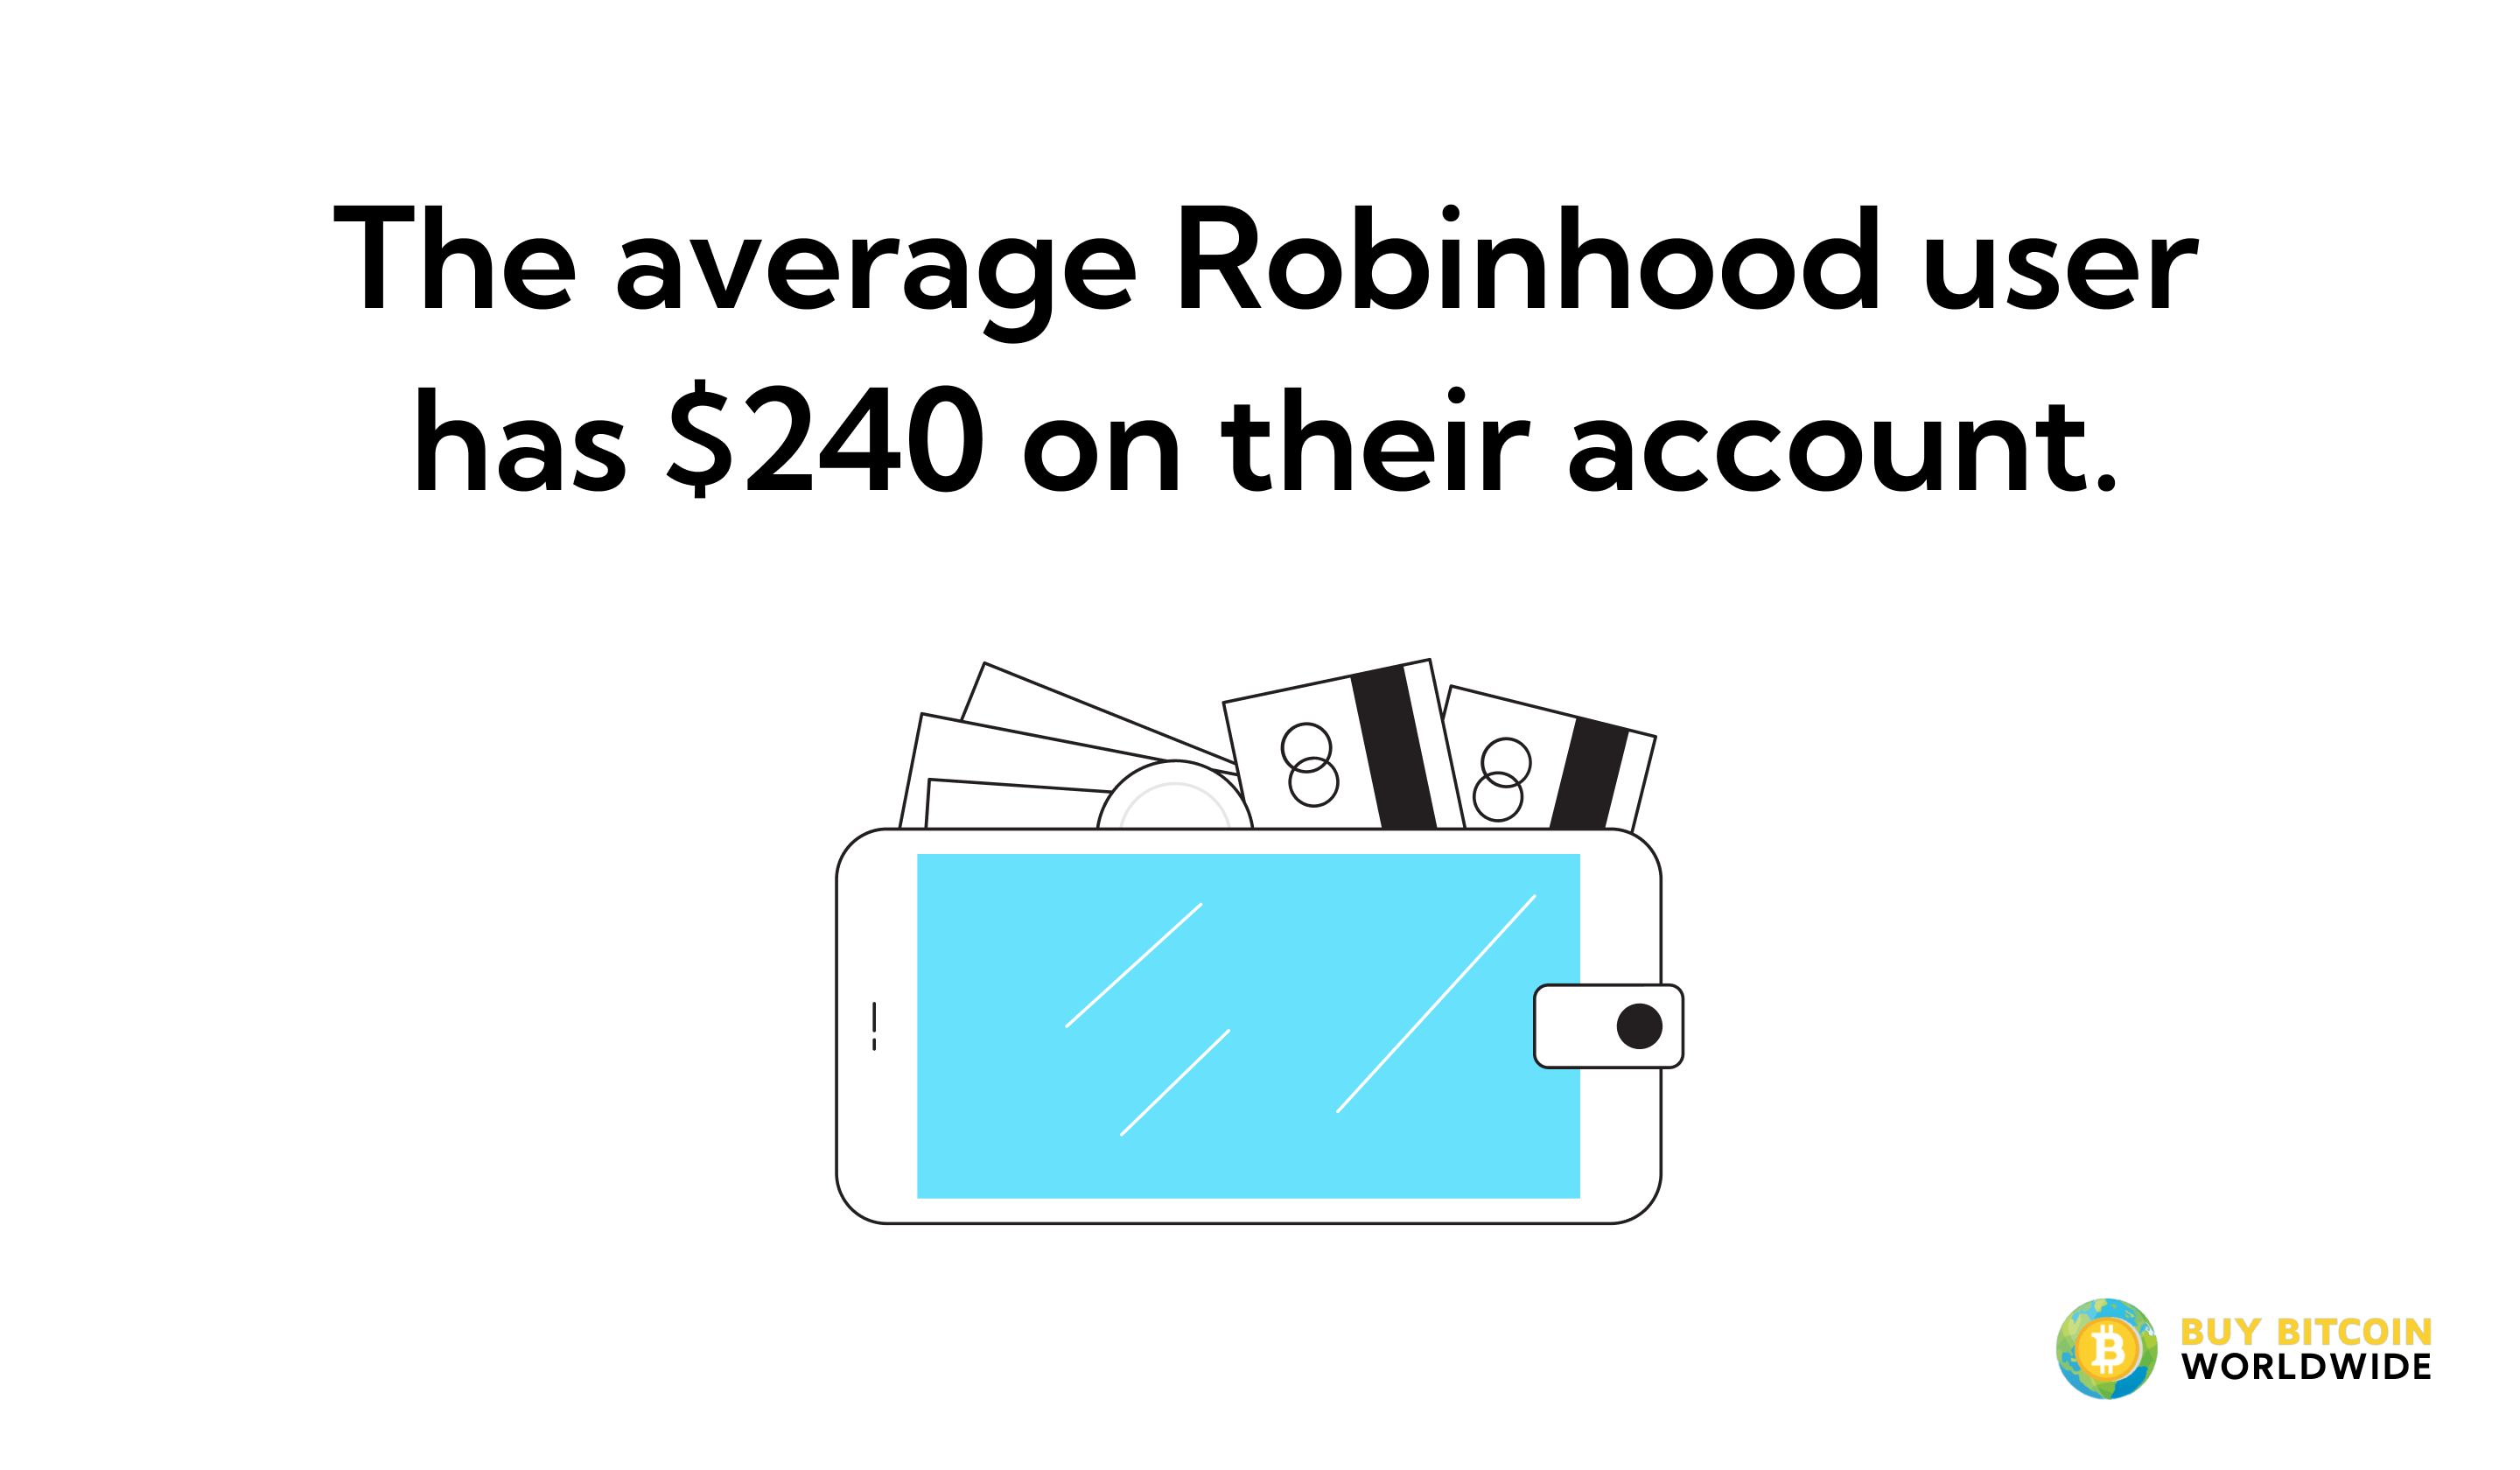 robinhood average users amount on account